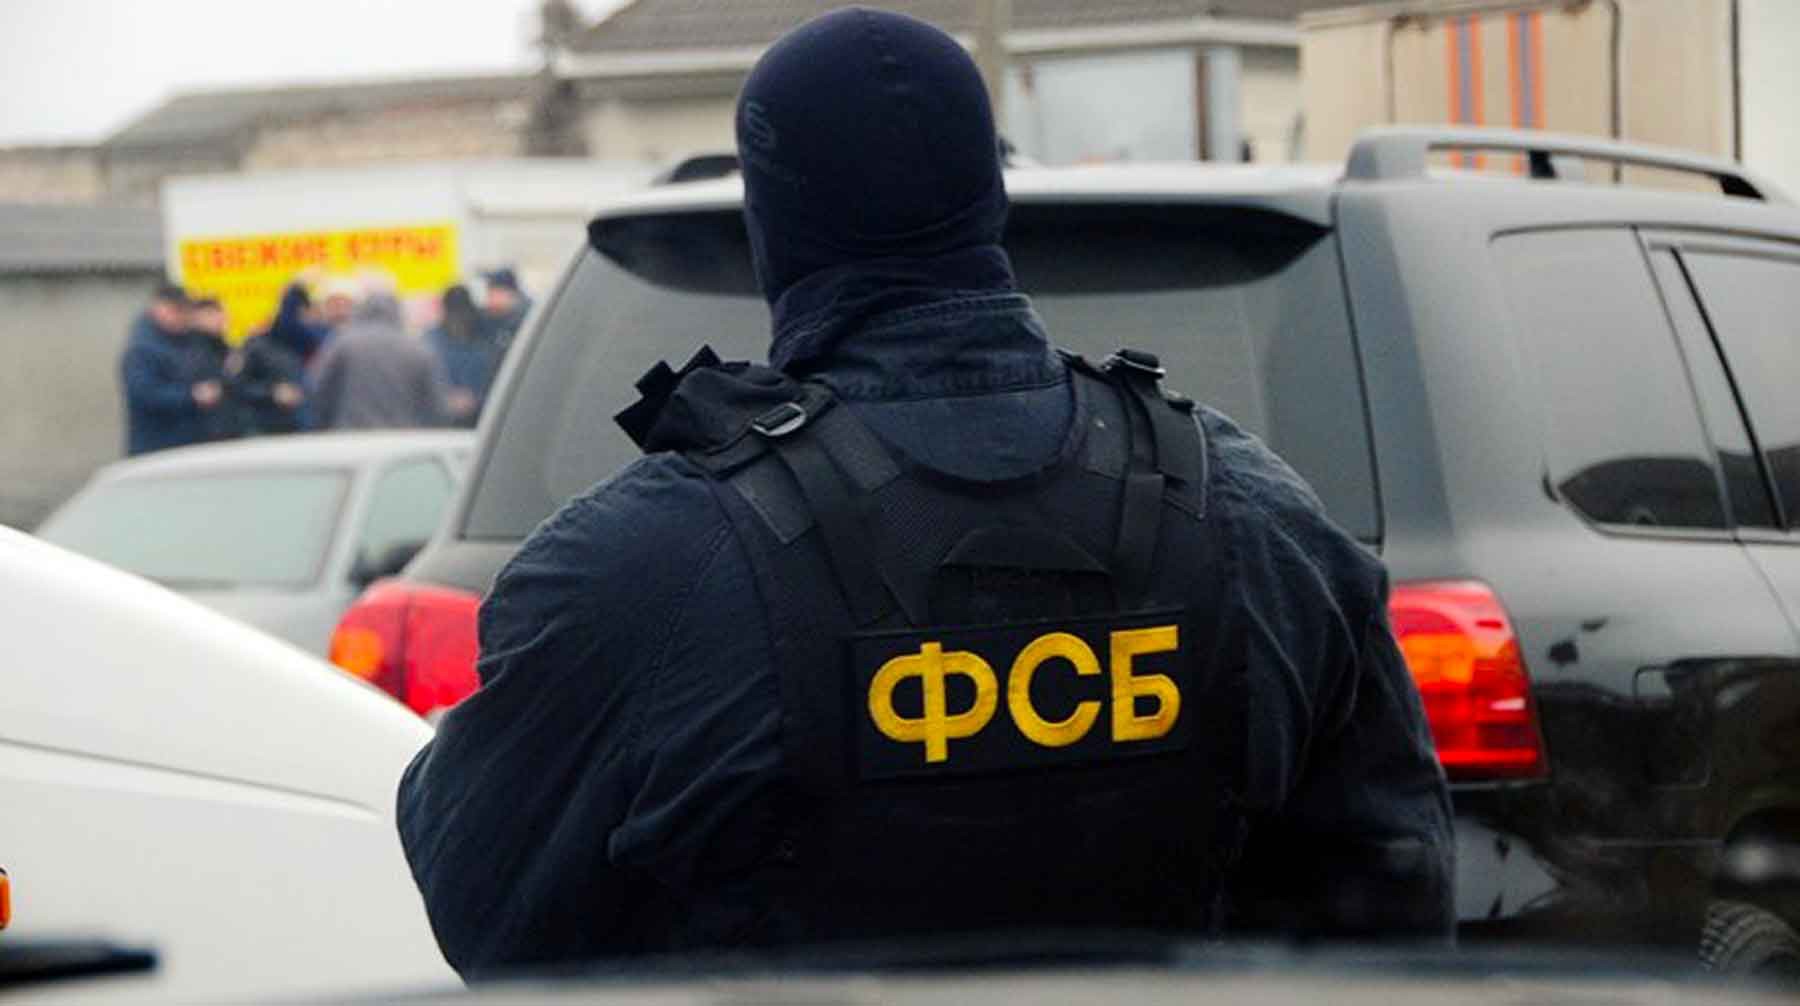 Dailystorm - ФСБ ликвидировала трех террористов в Екатеринбурге